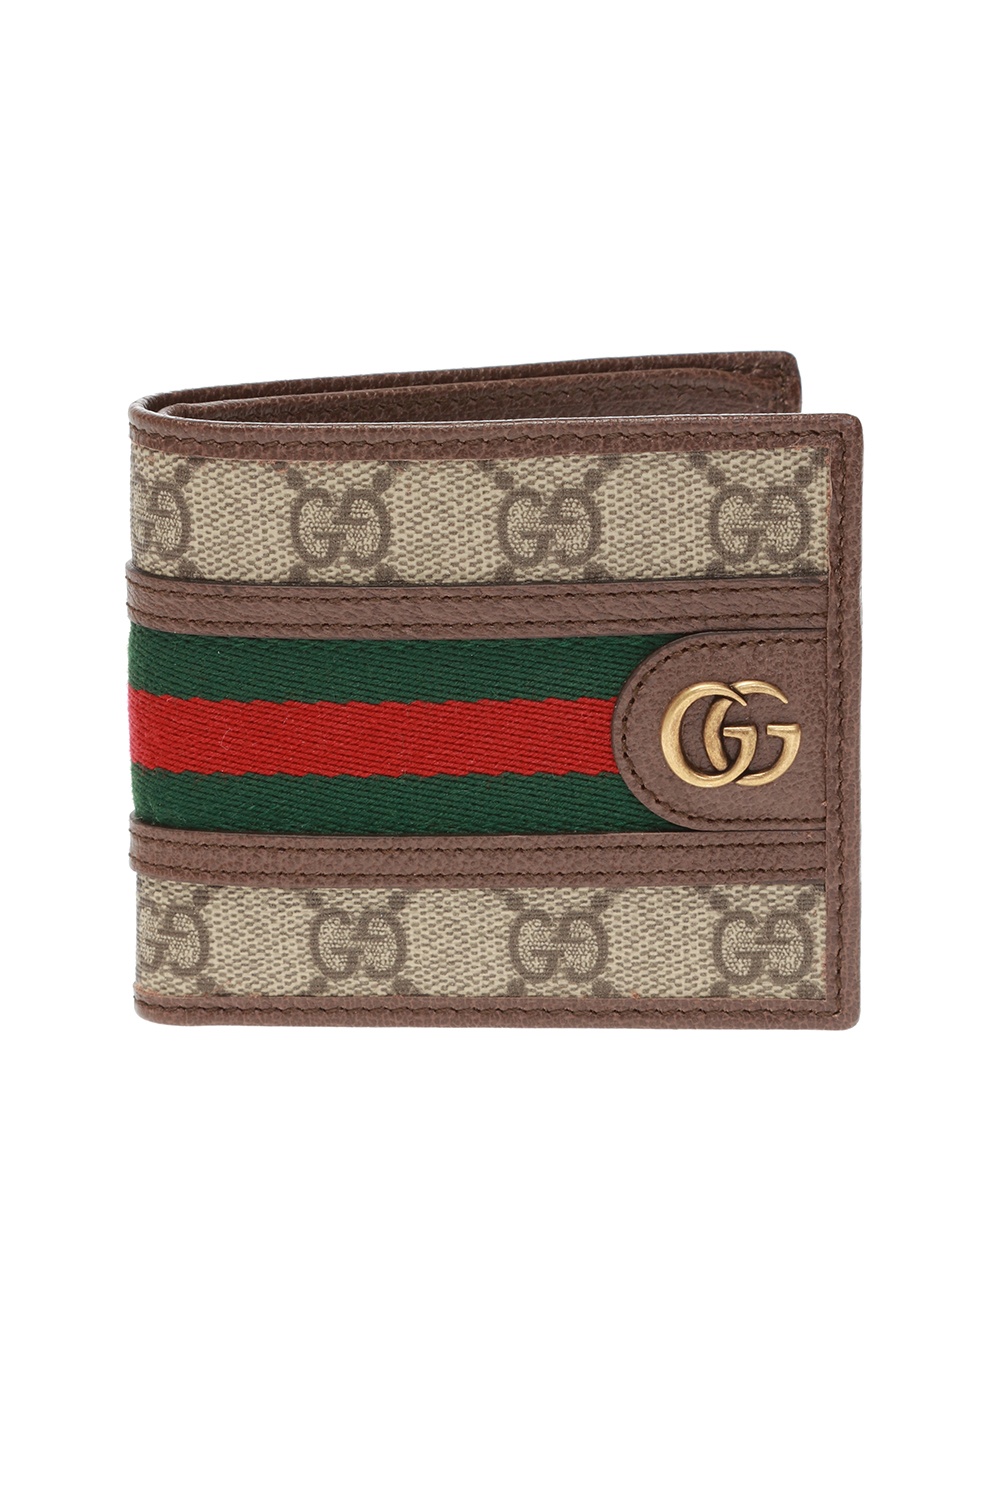 Gucci gelfalten wallet